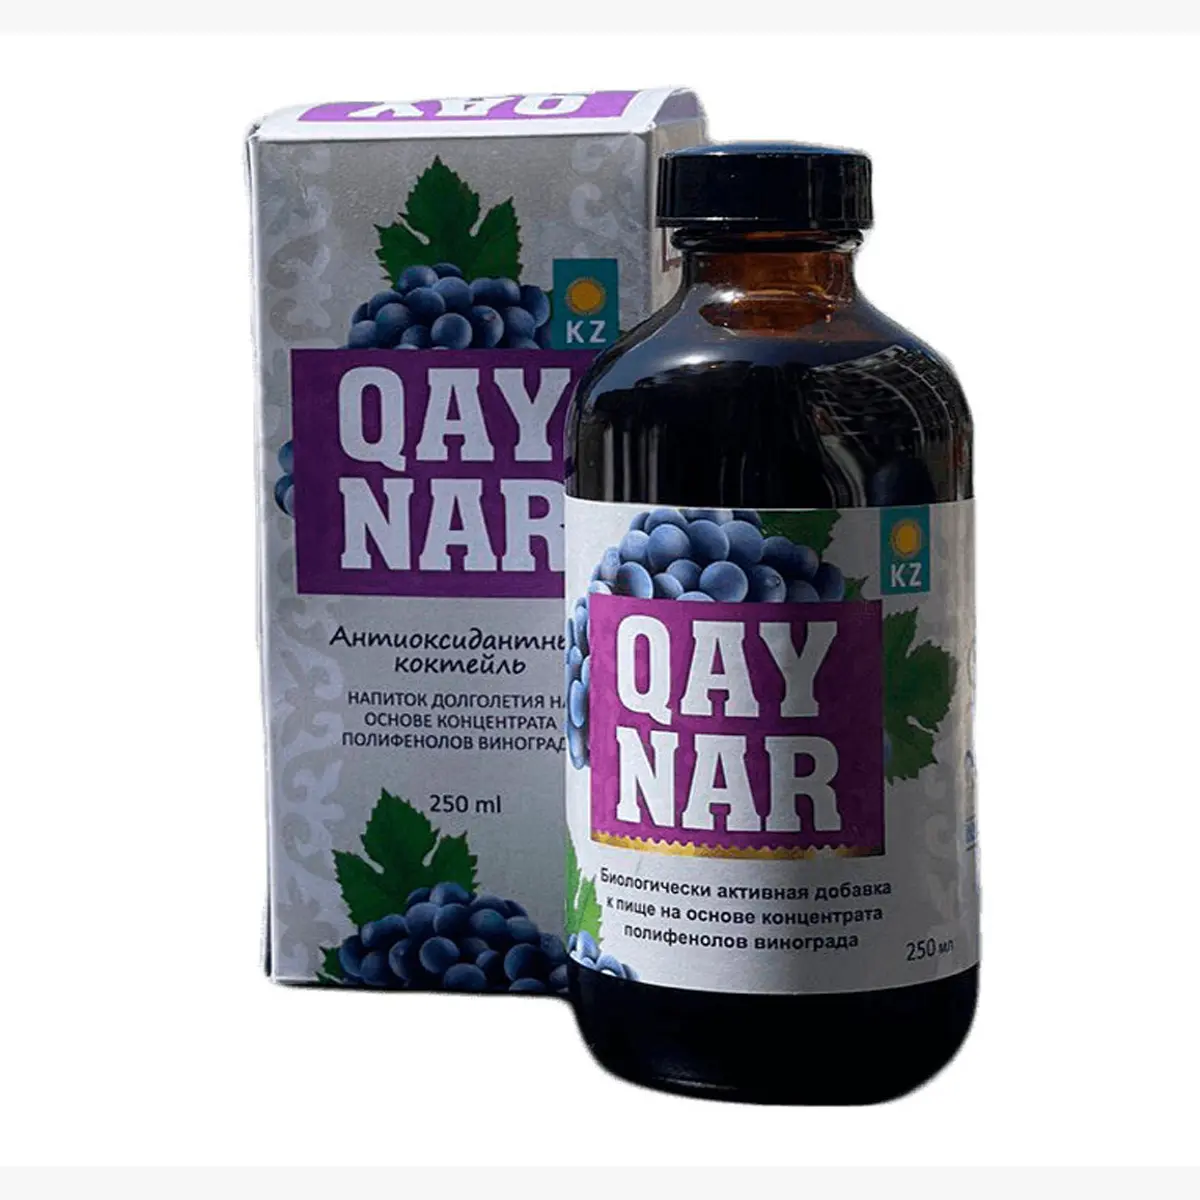 Estratto di polifenolo di semi d'uva "QAYNAR" integratore alimentare bioattivo contiene antiossidanti naturali, prodotto di alta qualità